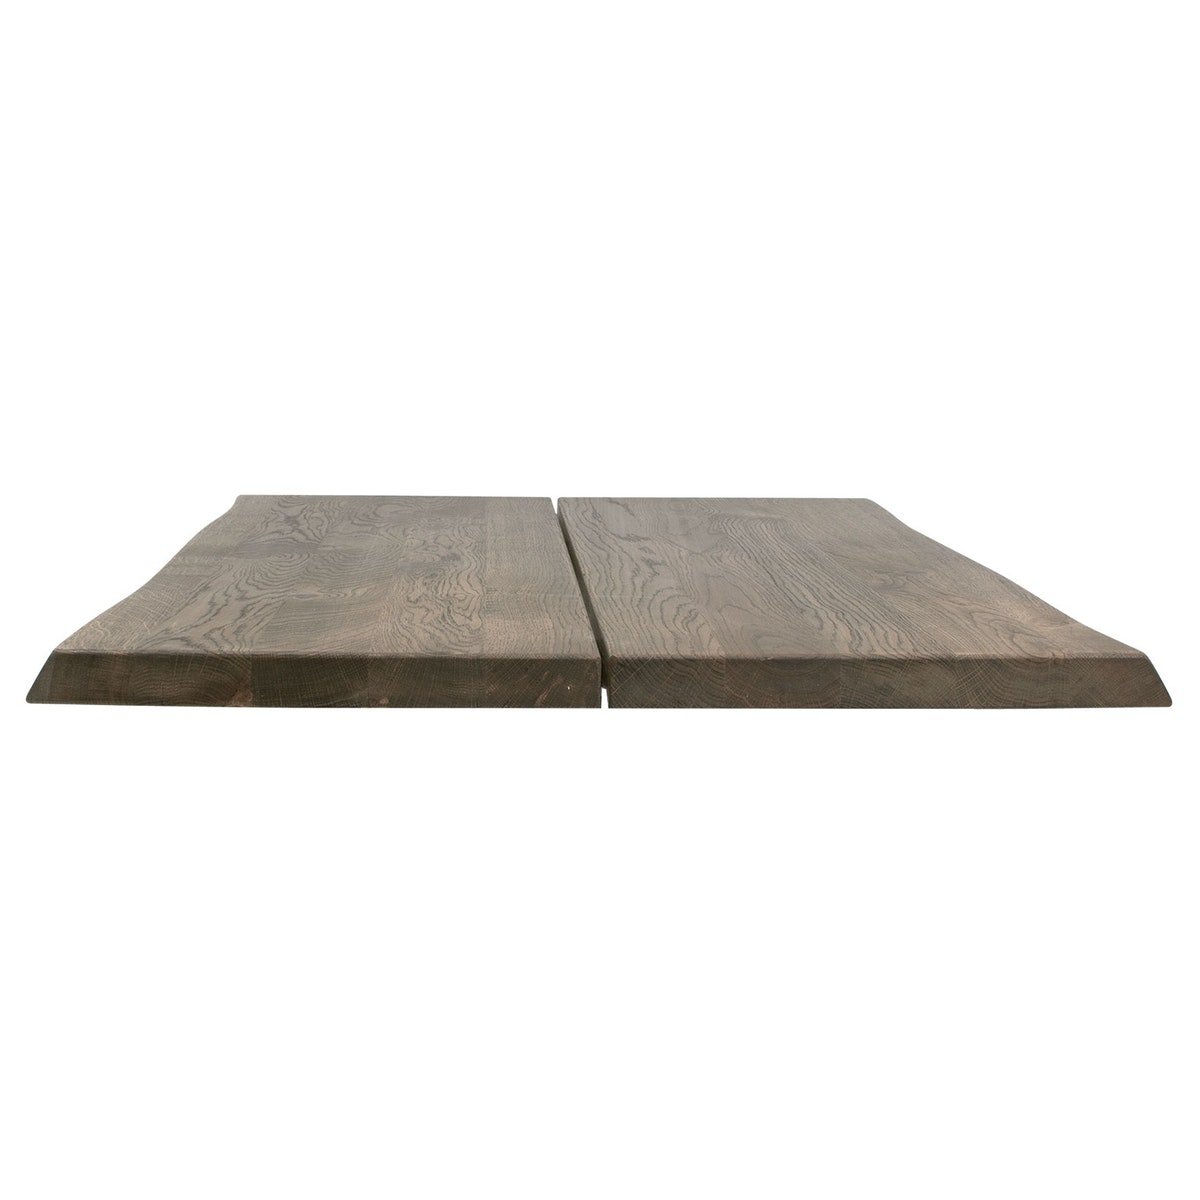 Hugin, Tillægsplade til Hugin plankebord, Egetræ by House of Sander (H: 4 cm. B: 103 cm. L: 50 cm., Grå)